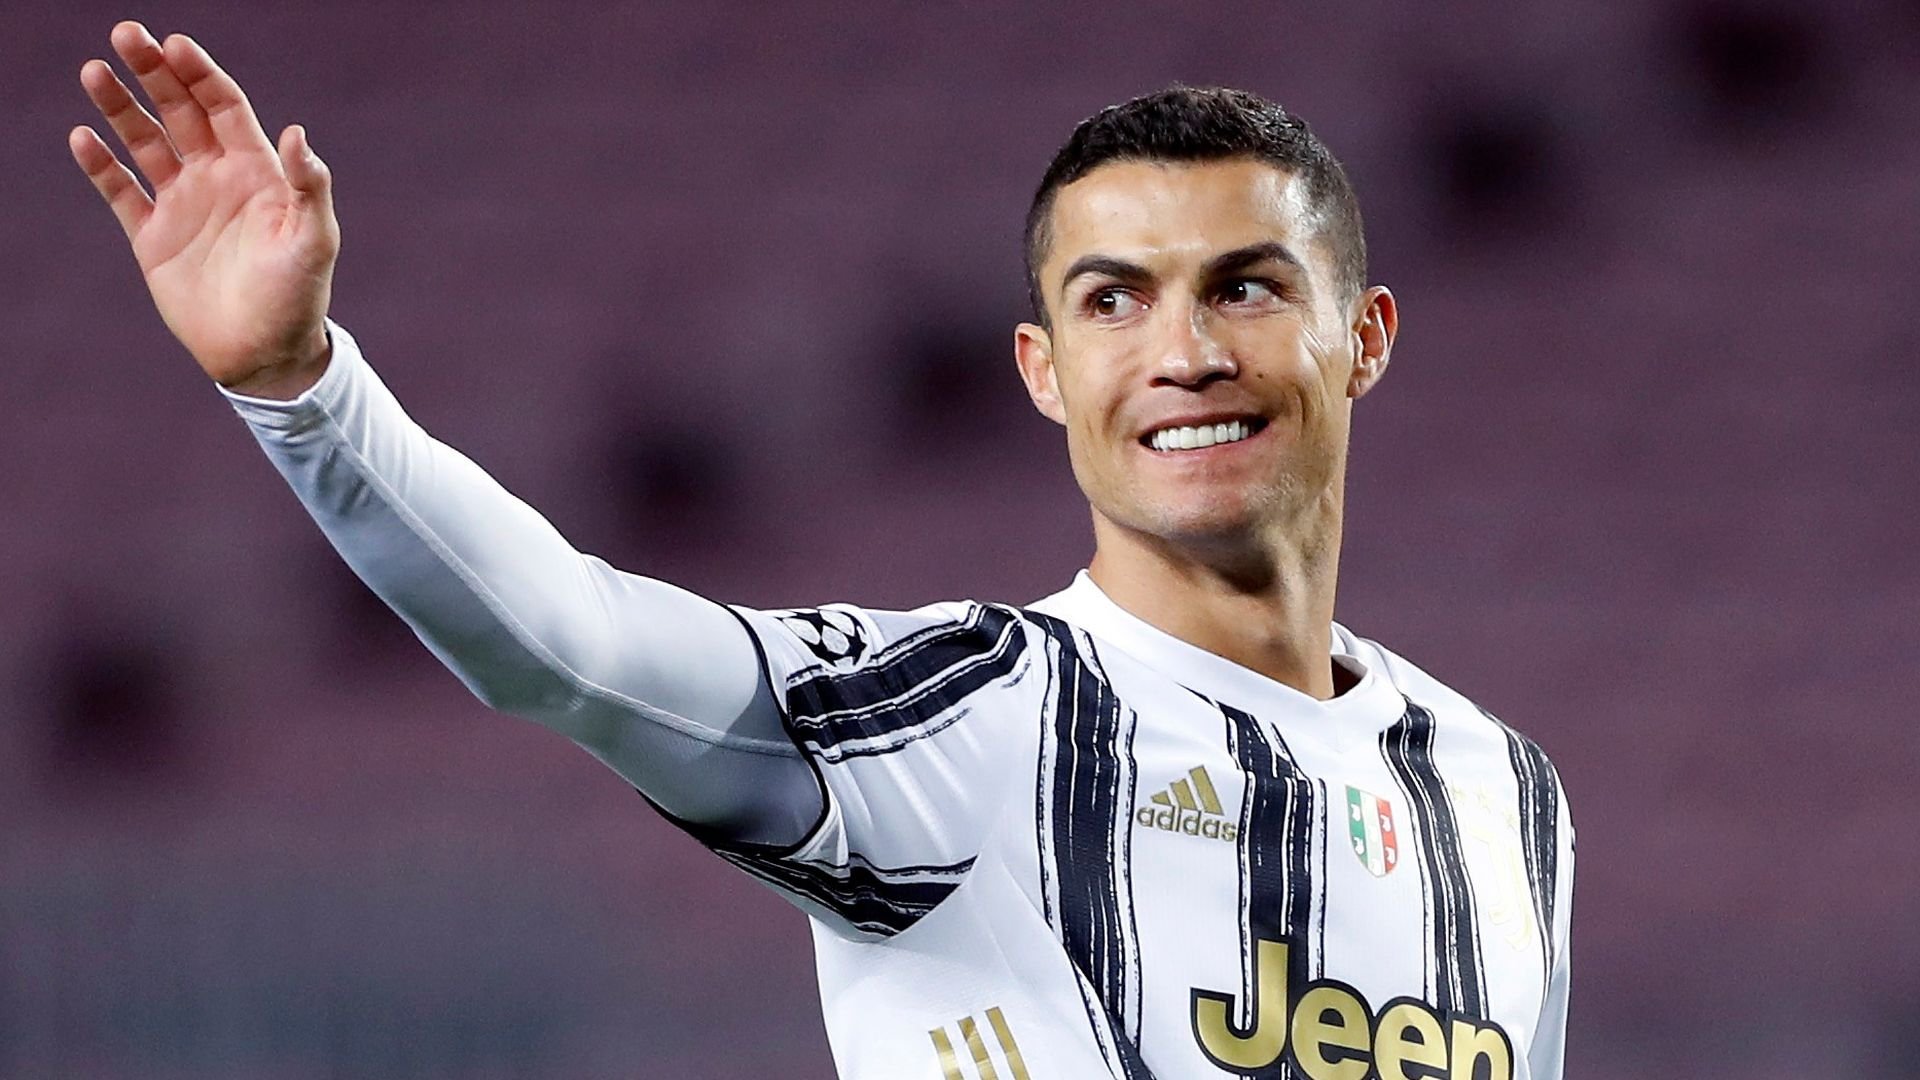 După Messi, Ronaldo? Italienii știu deja destinația lui CR7, dacă a doua bombă va exploda pe piața transferurilor